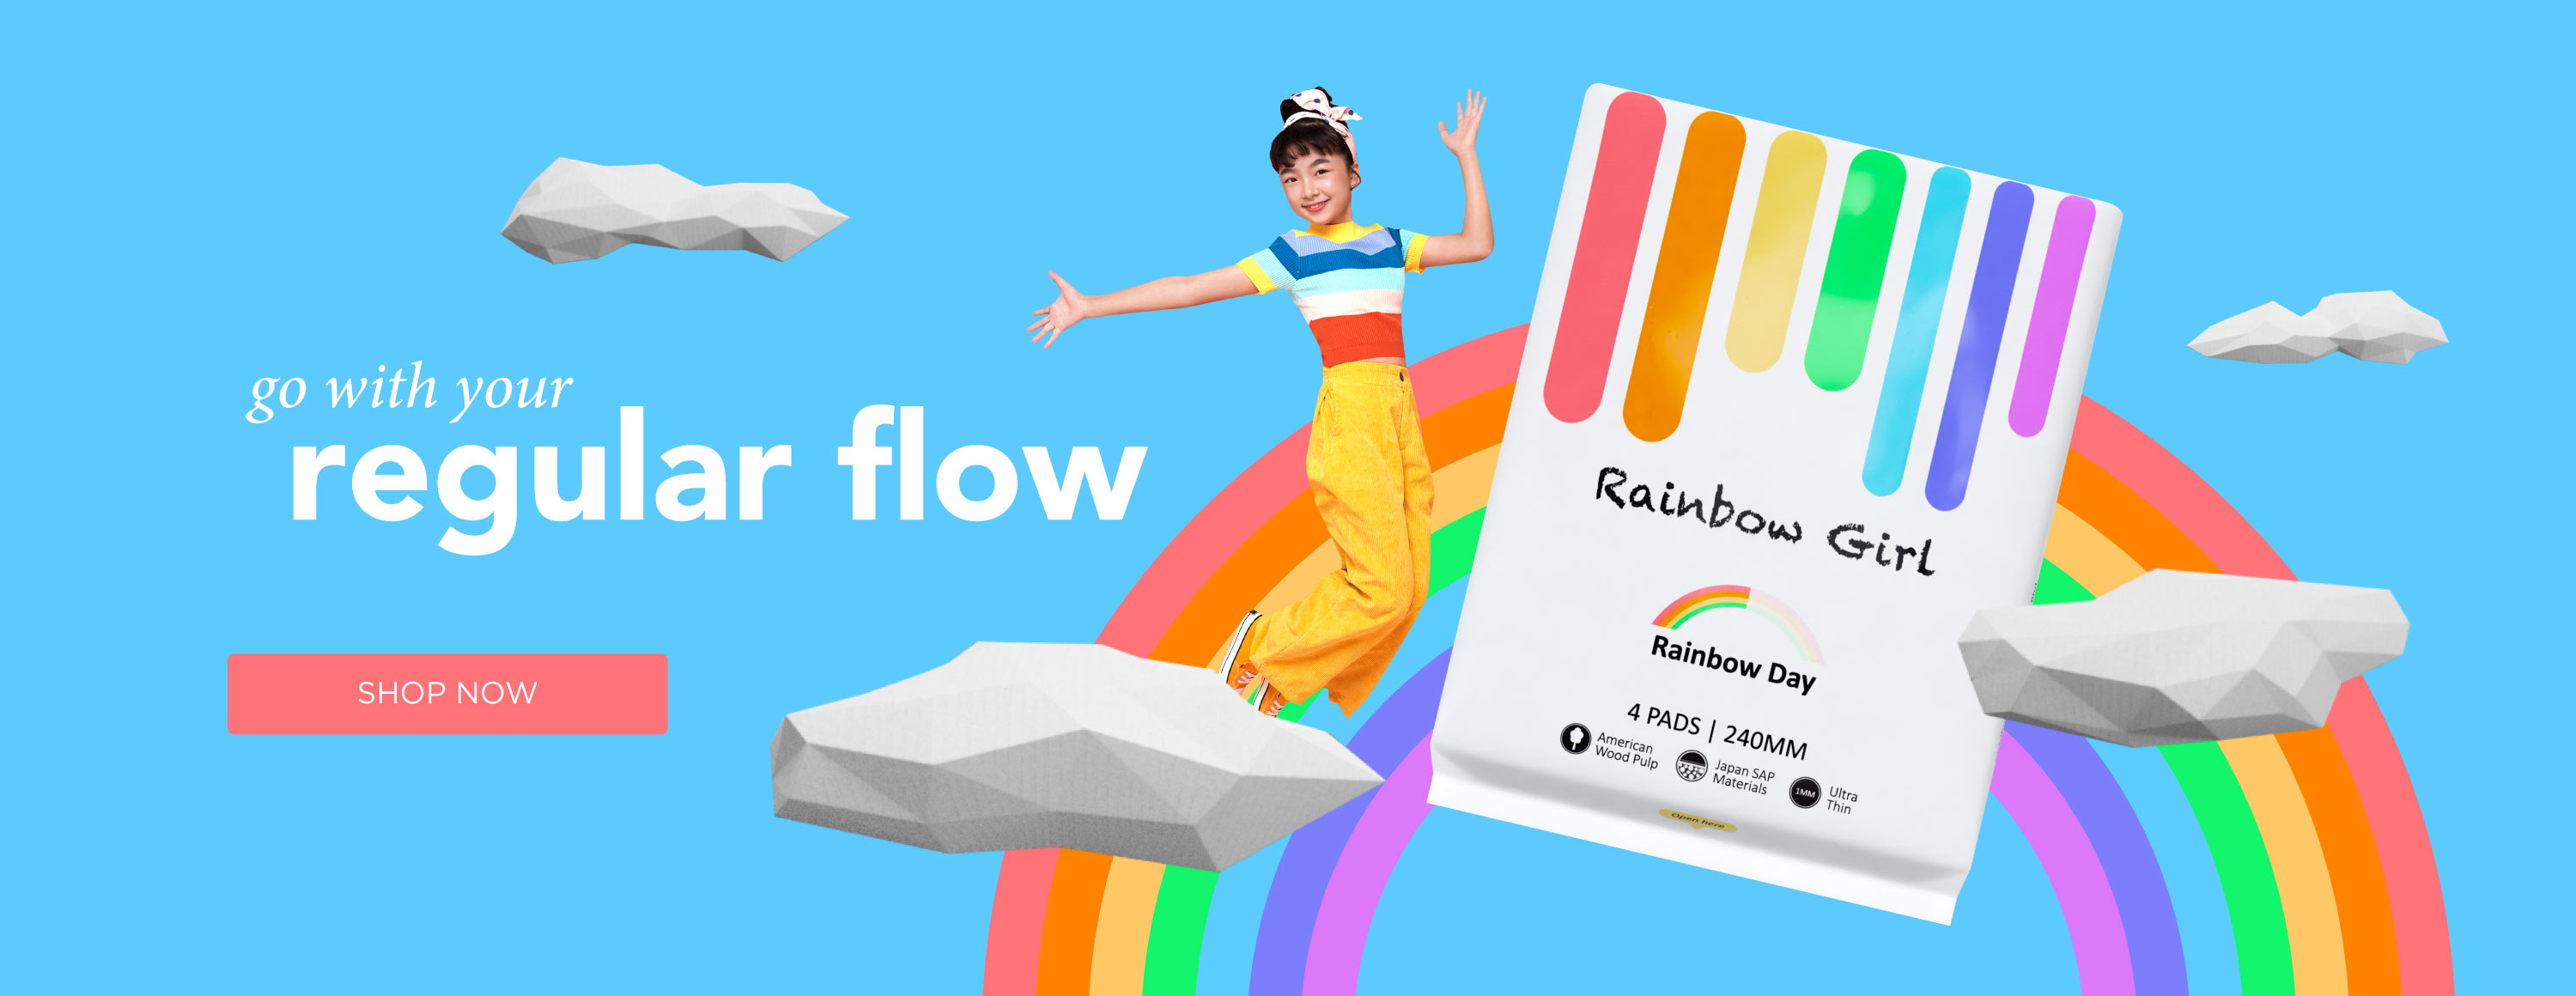 Rainbow Girl - Rainbow Day